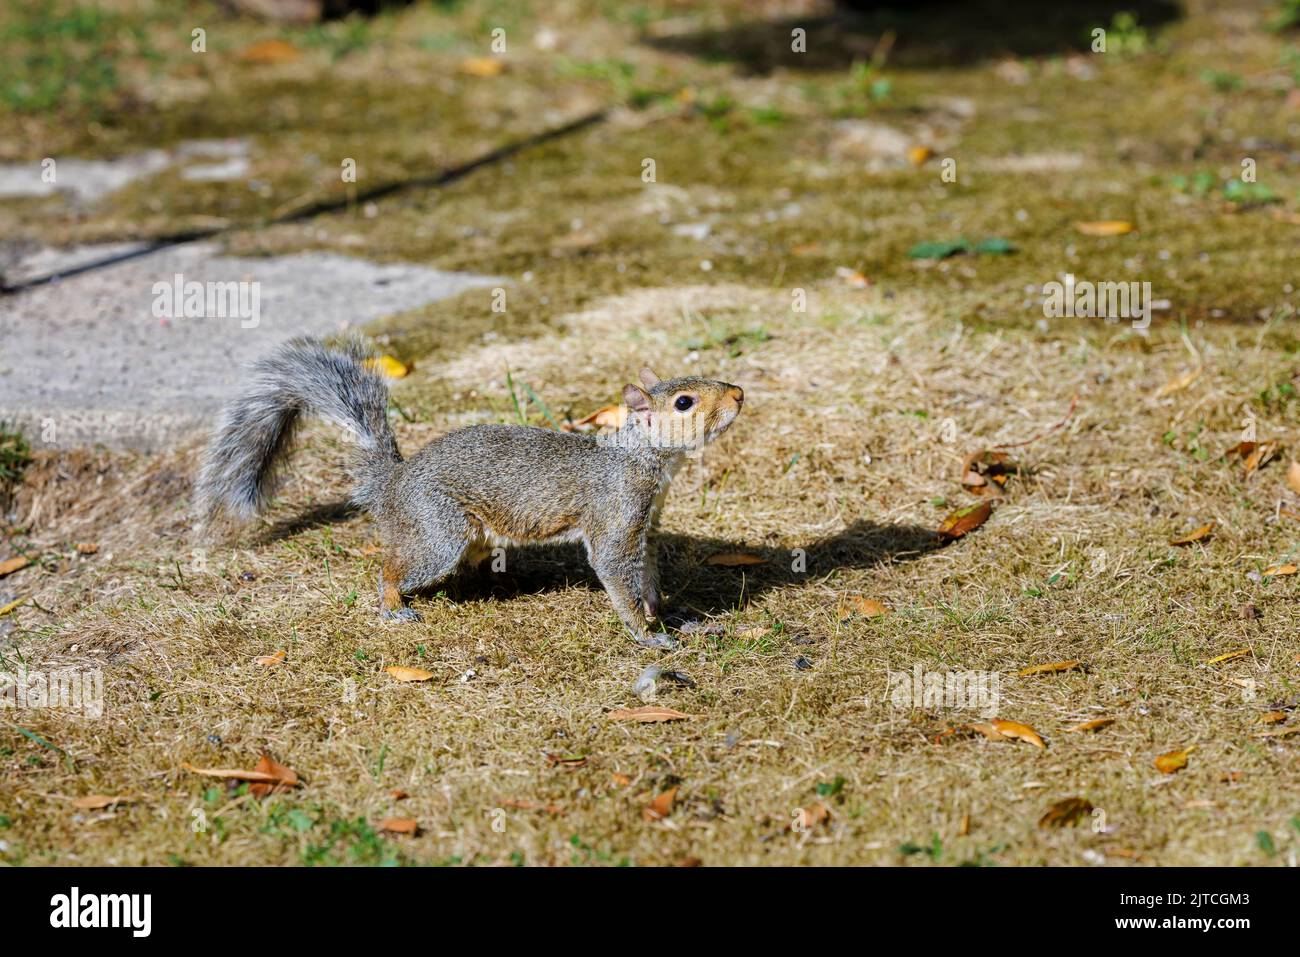 Ein graues Eichhörnchen, Sciurus carolinensis, auf dem Boden in einem Garten in Surrey, Südostengland, eine invasive eingeschleppte Art, die heute ein häufiger Schädling ist Stockfoto